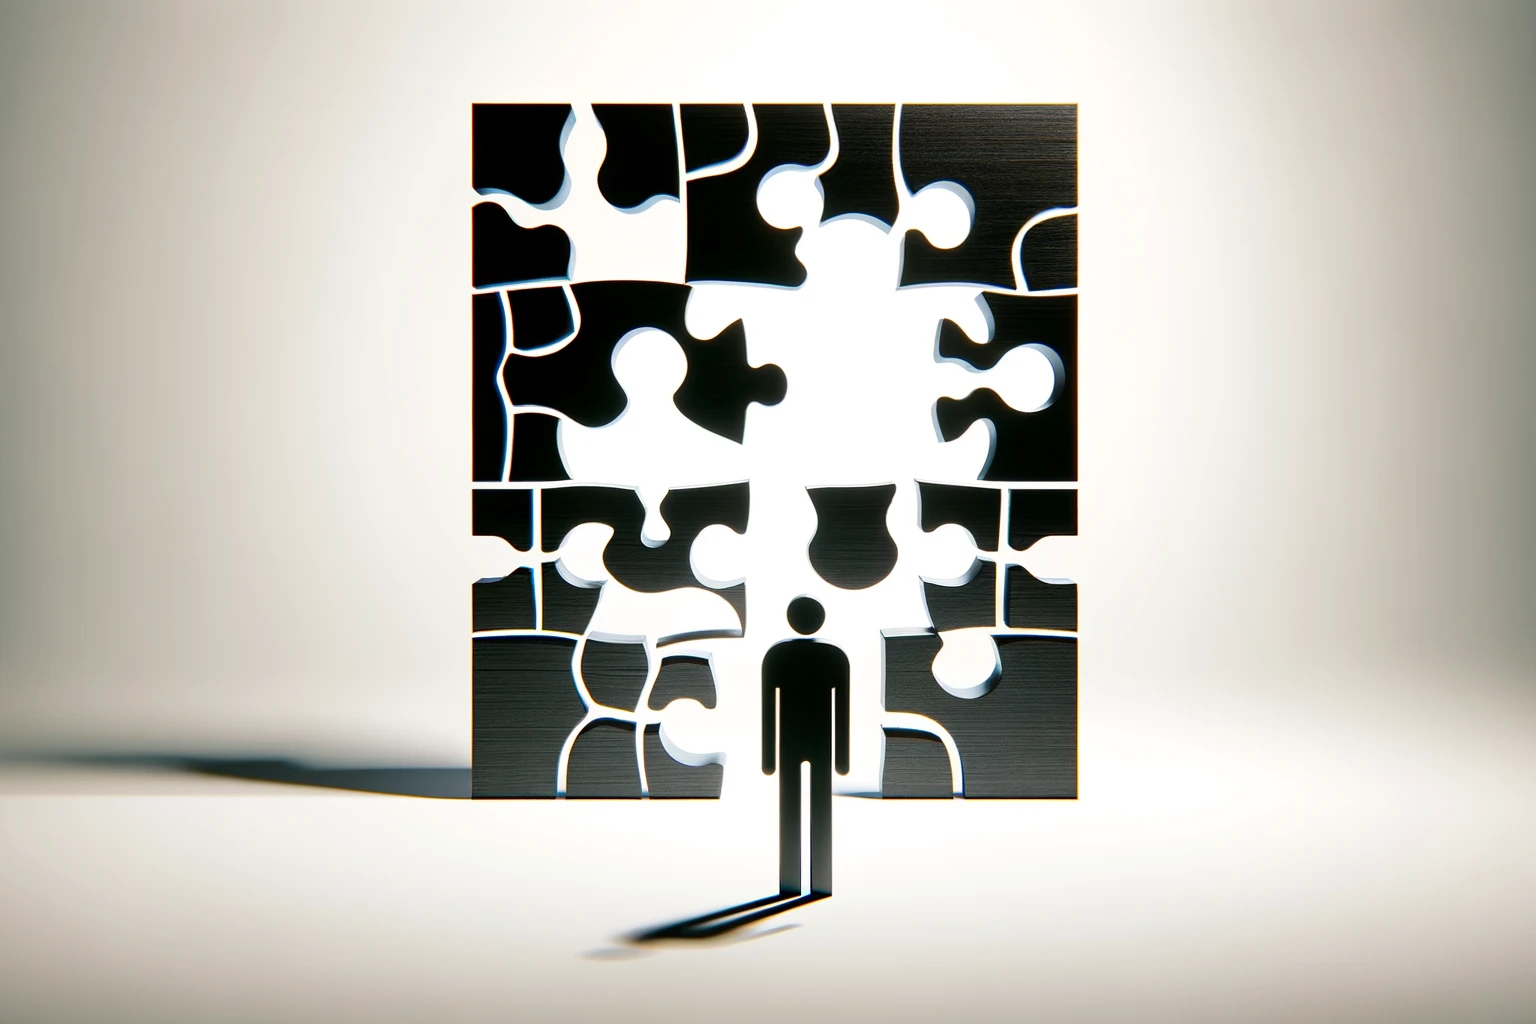 Visualisierung des Themas "Schwarz auf weiß: Werte, Ziele und Entscheidungen" durch die grafische Gestaltung eines Puzzles.